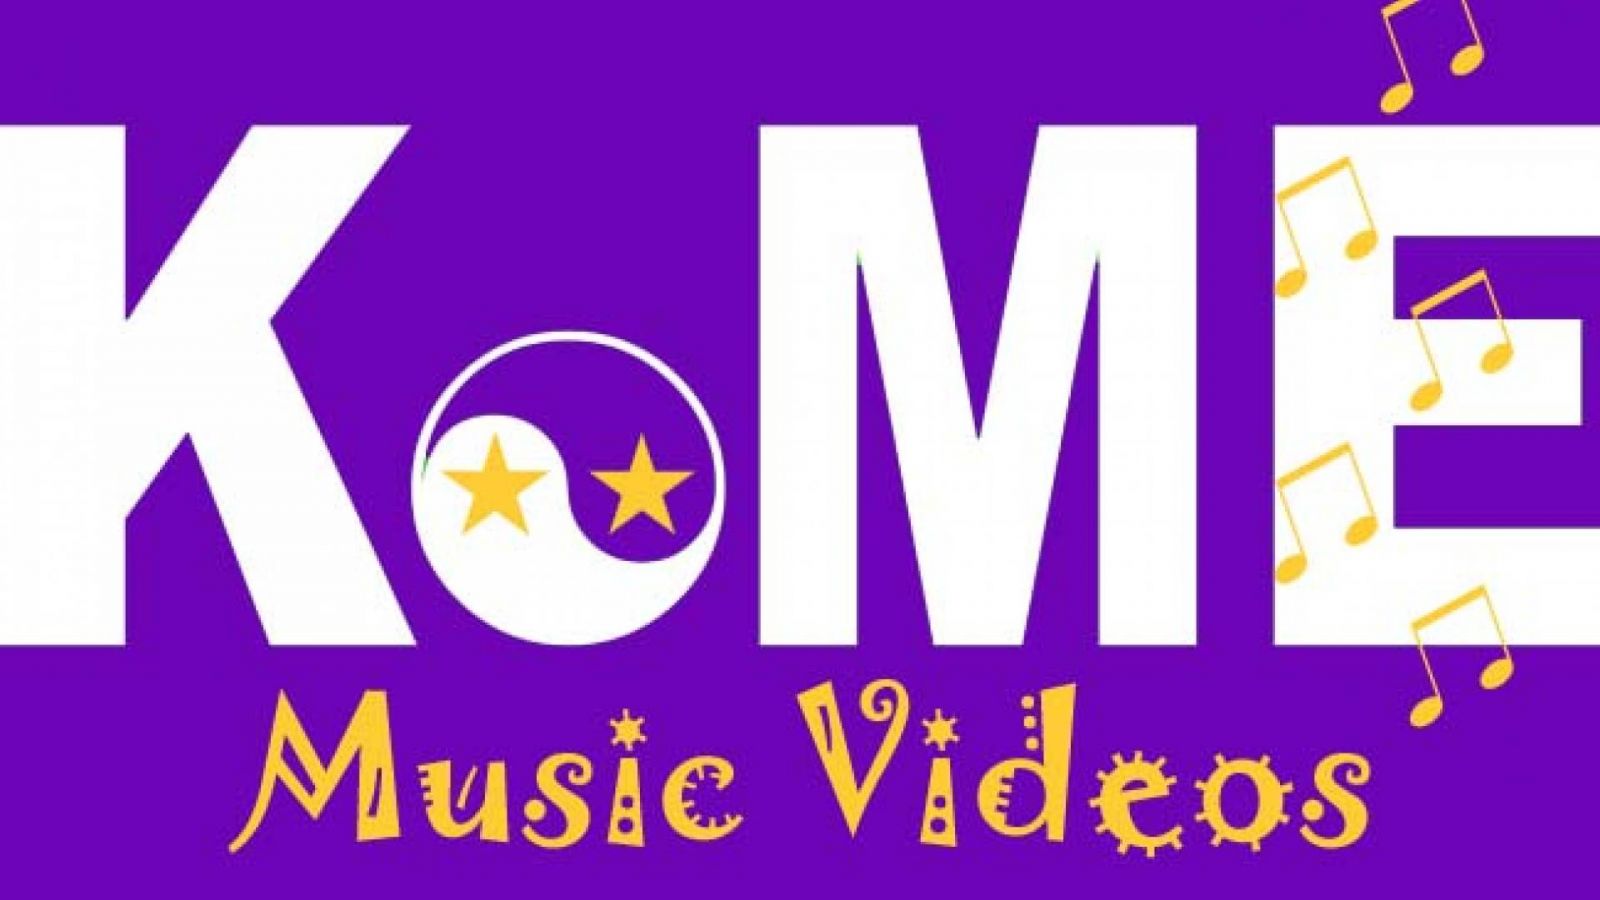 MVs da semana: 18/11 - 24/11 © KoME